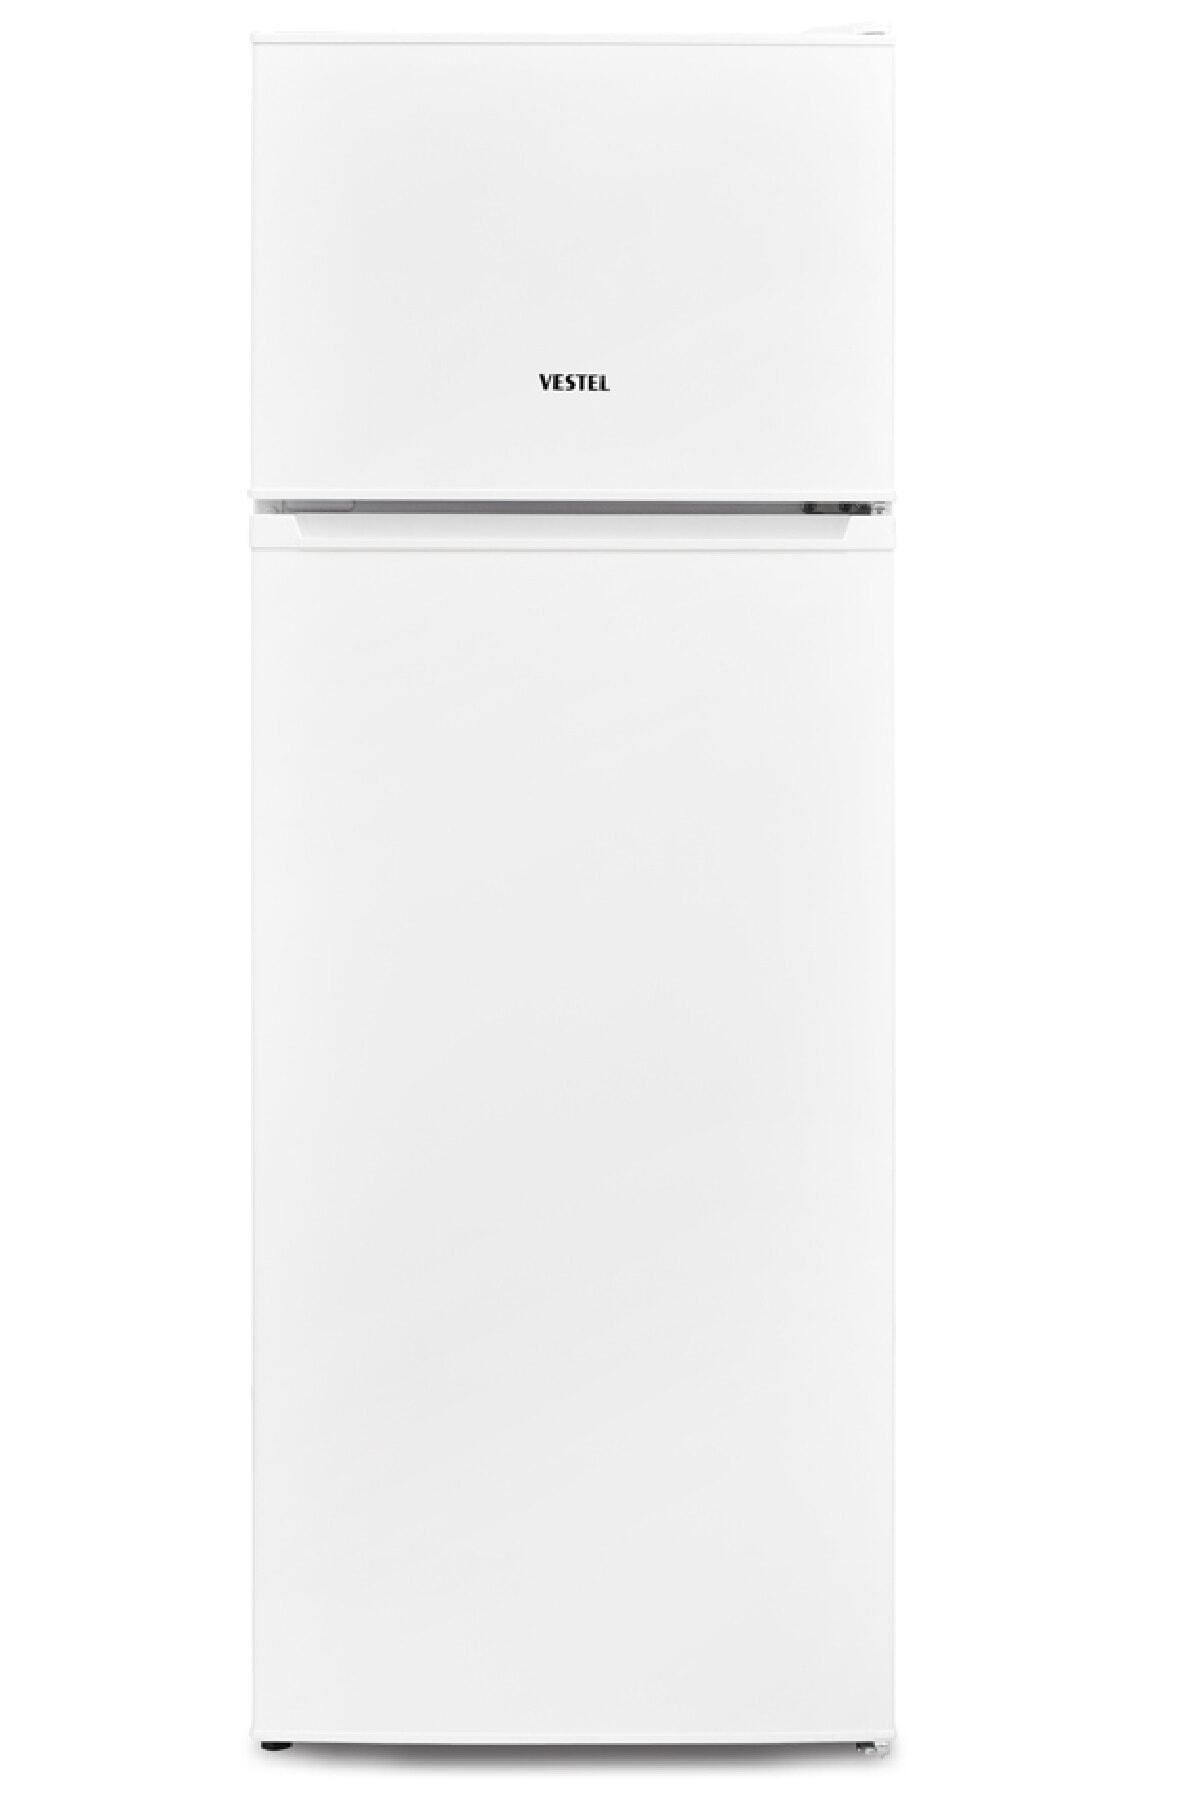 VESTEL Buzdolabı Eko Sc 25001